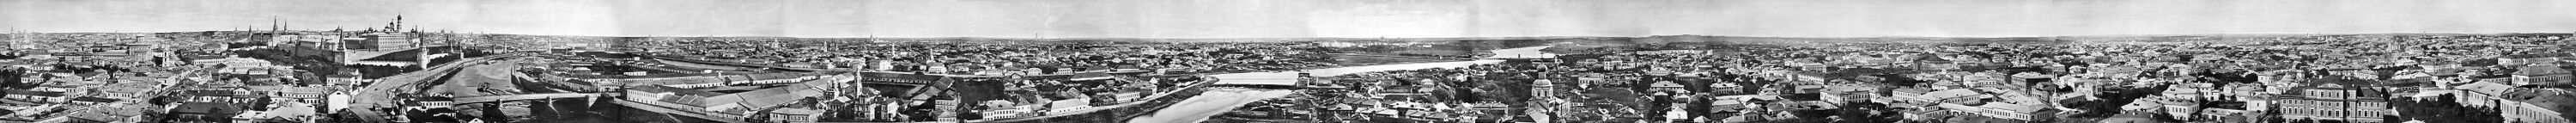 Вид Москвы в 1867 году. Нажмите сюда, чтобы увидеть изображение с примечаниями.